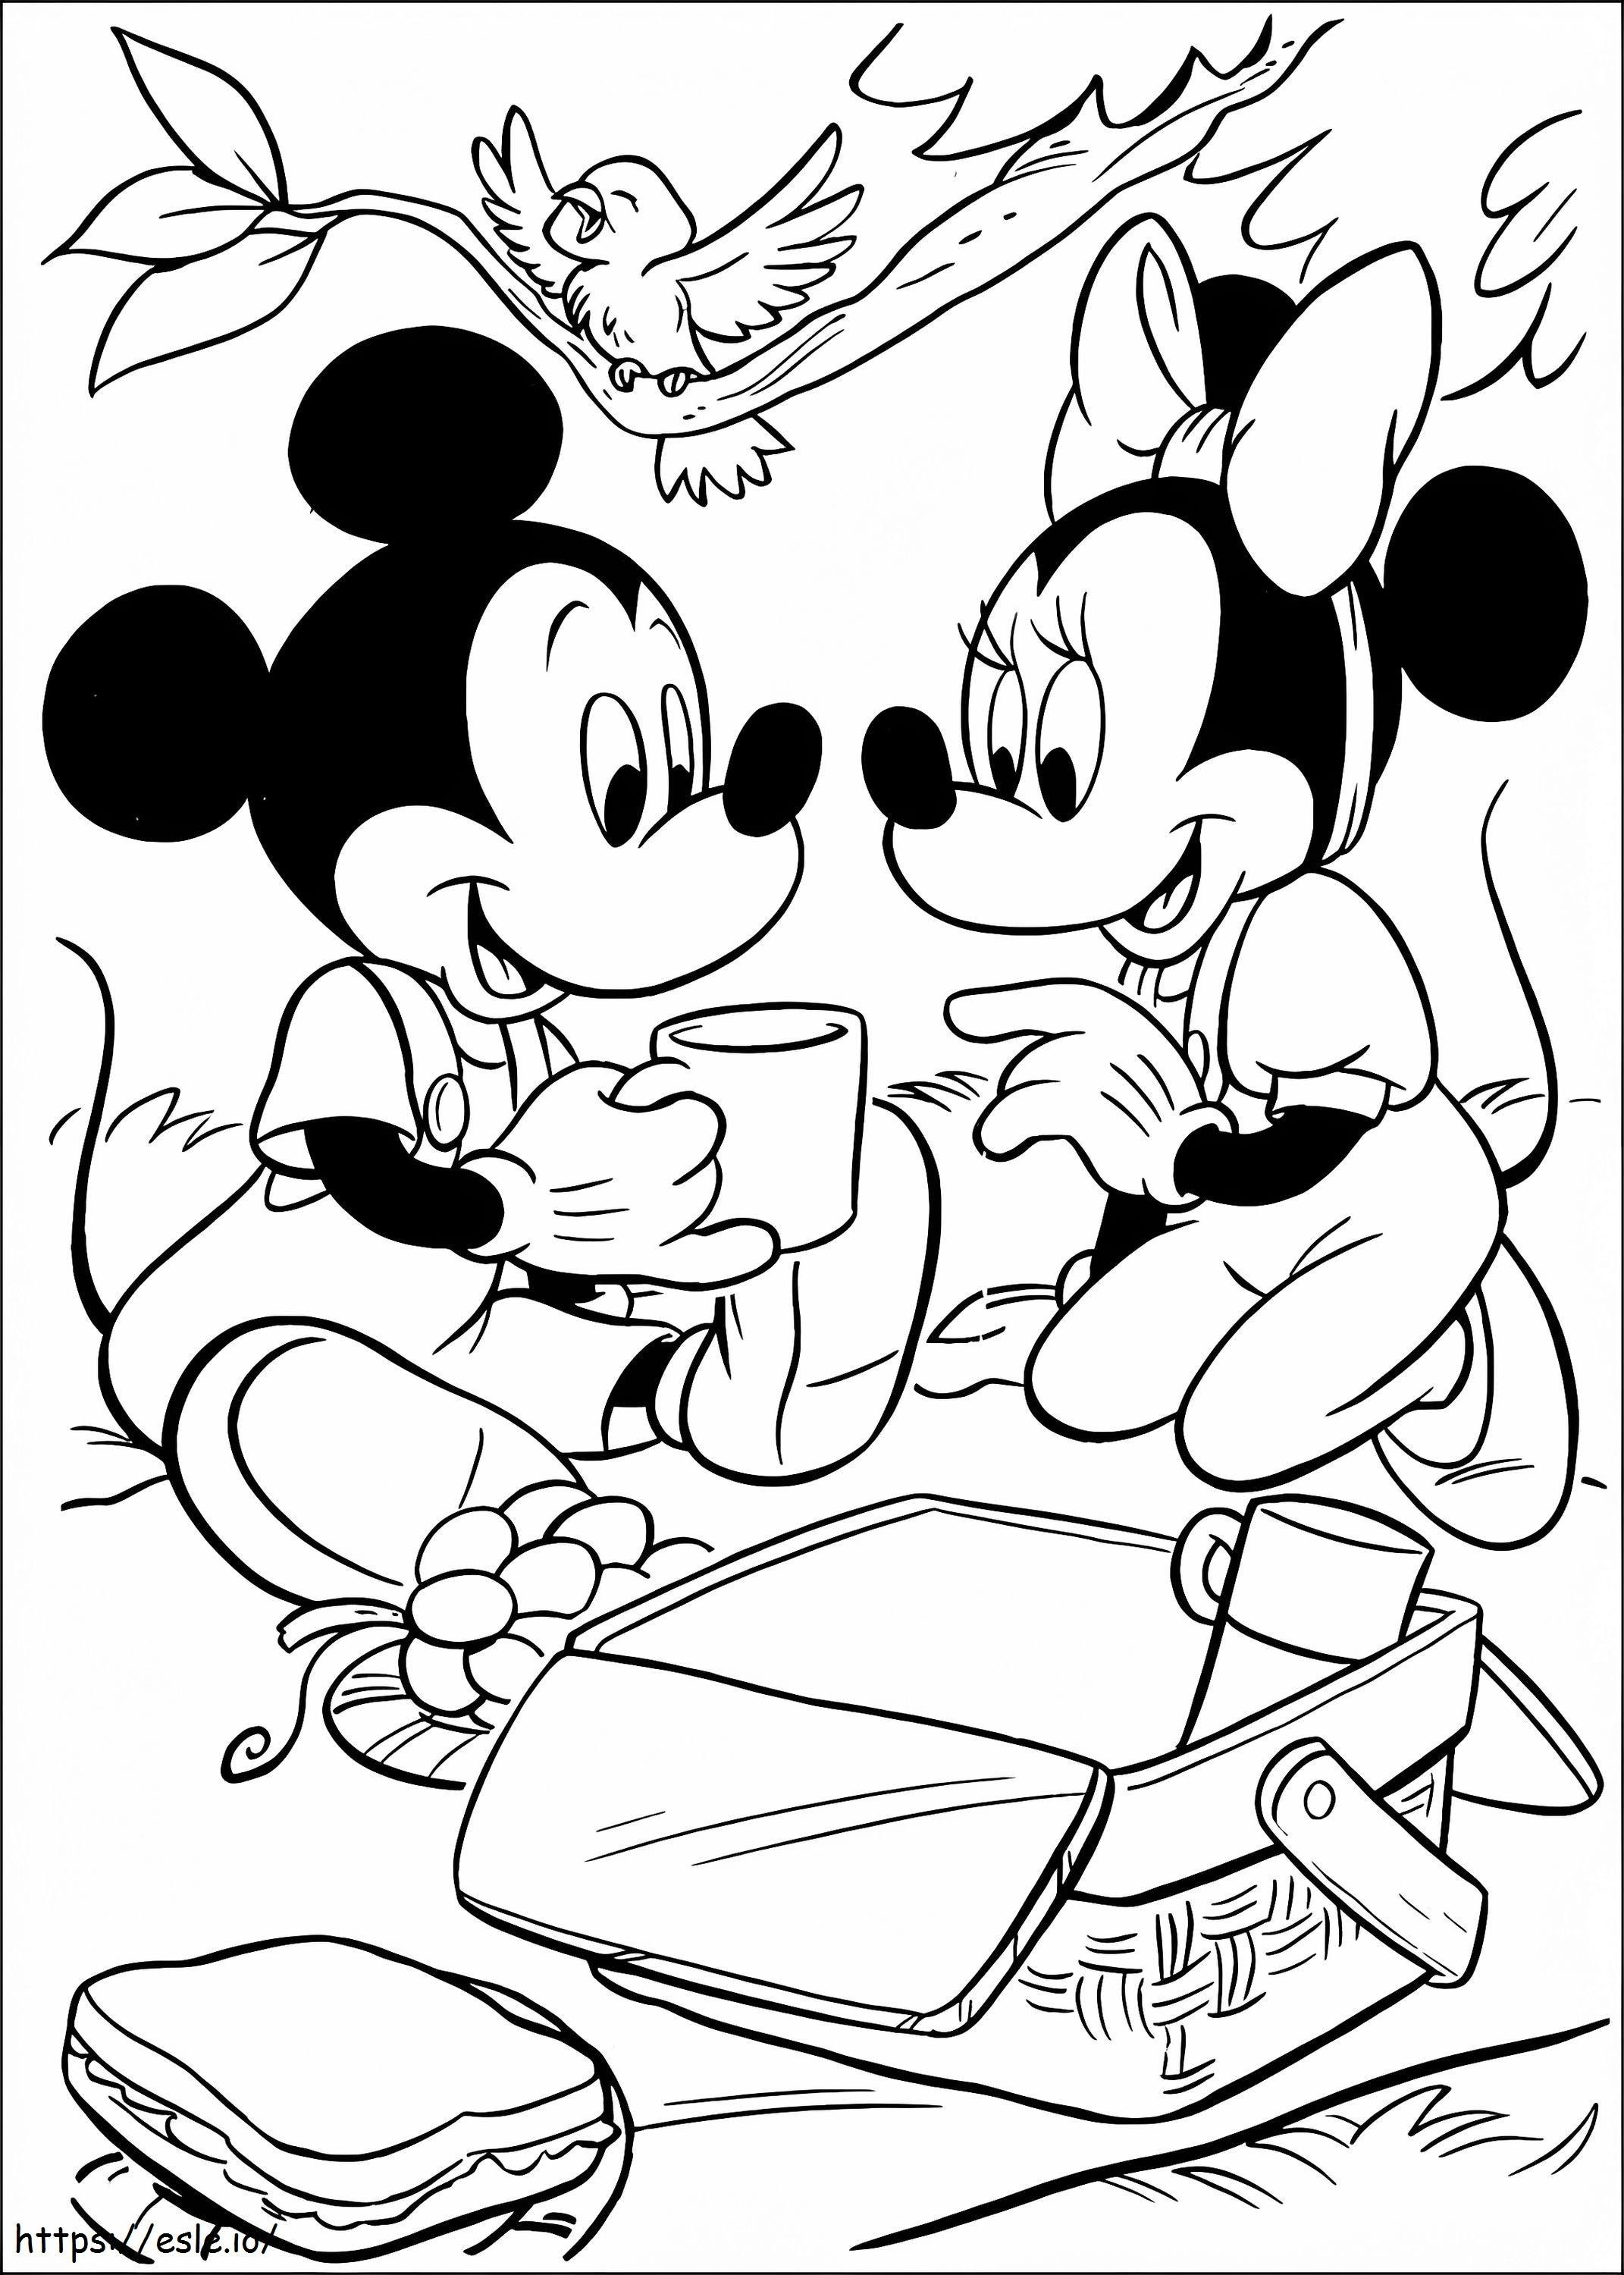 Mickey und Minnie auf einem Picknick ausmalbilder